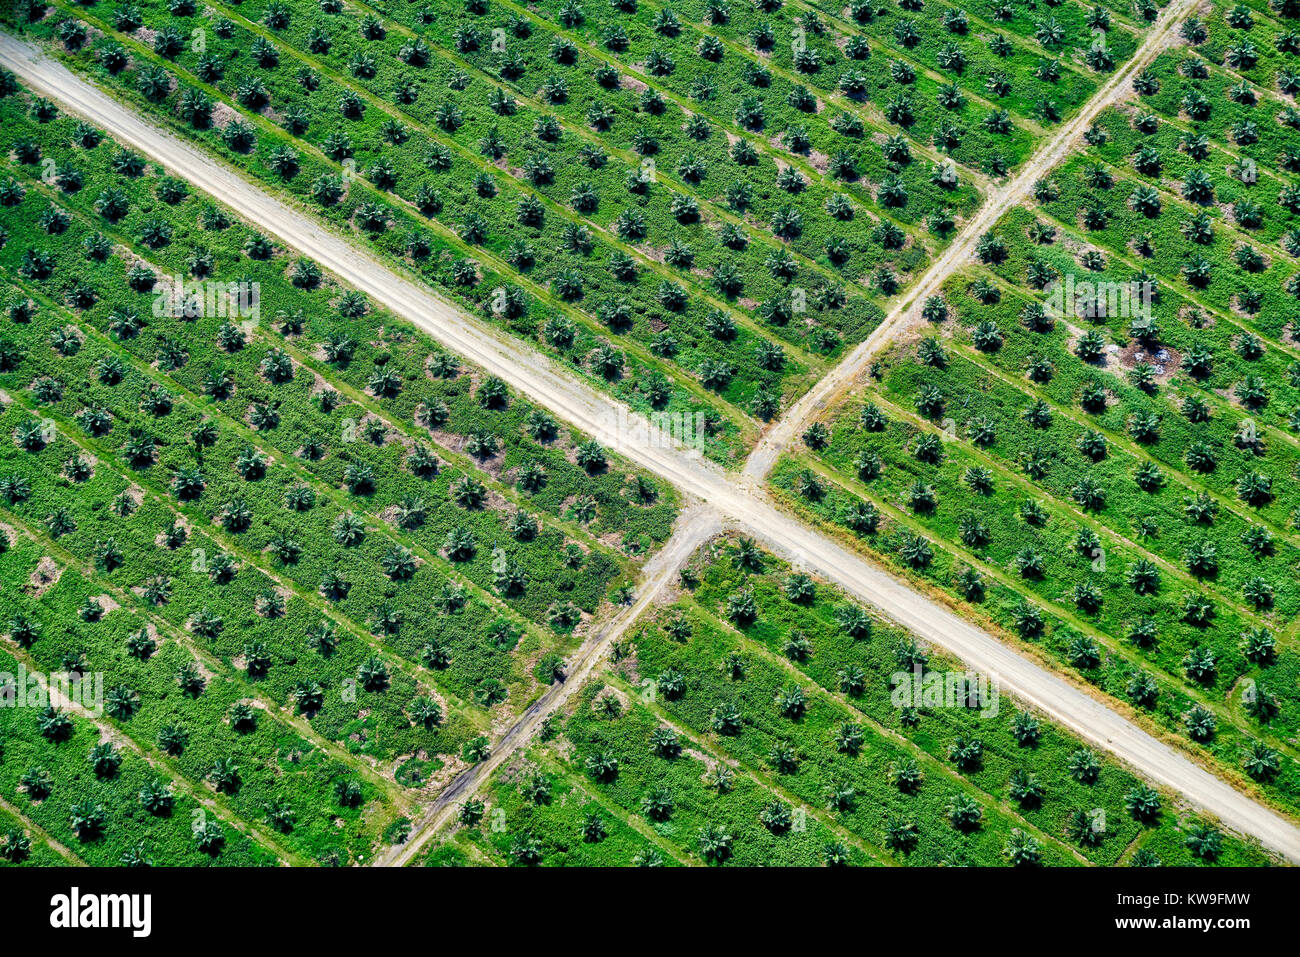 Vue aérienne de la plantation de palmiers à huile sur l'île de Guadalcanal dans les Îles Salomon Banque D'Images